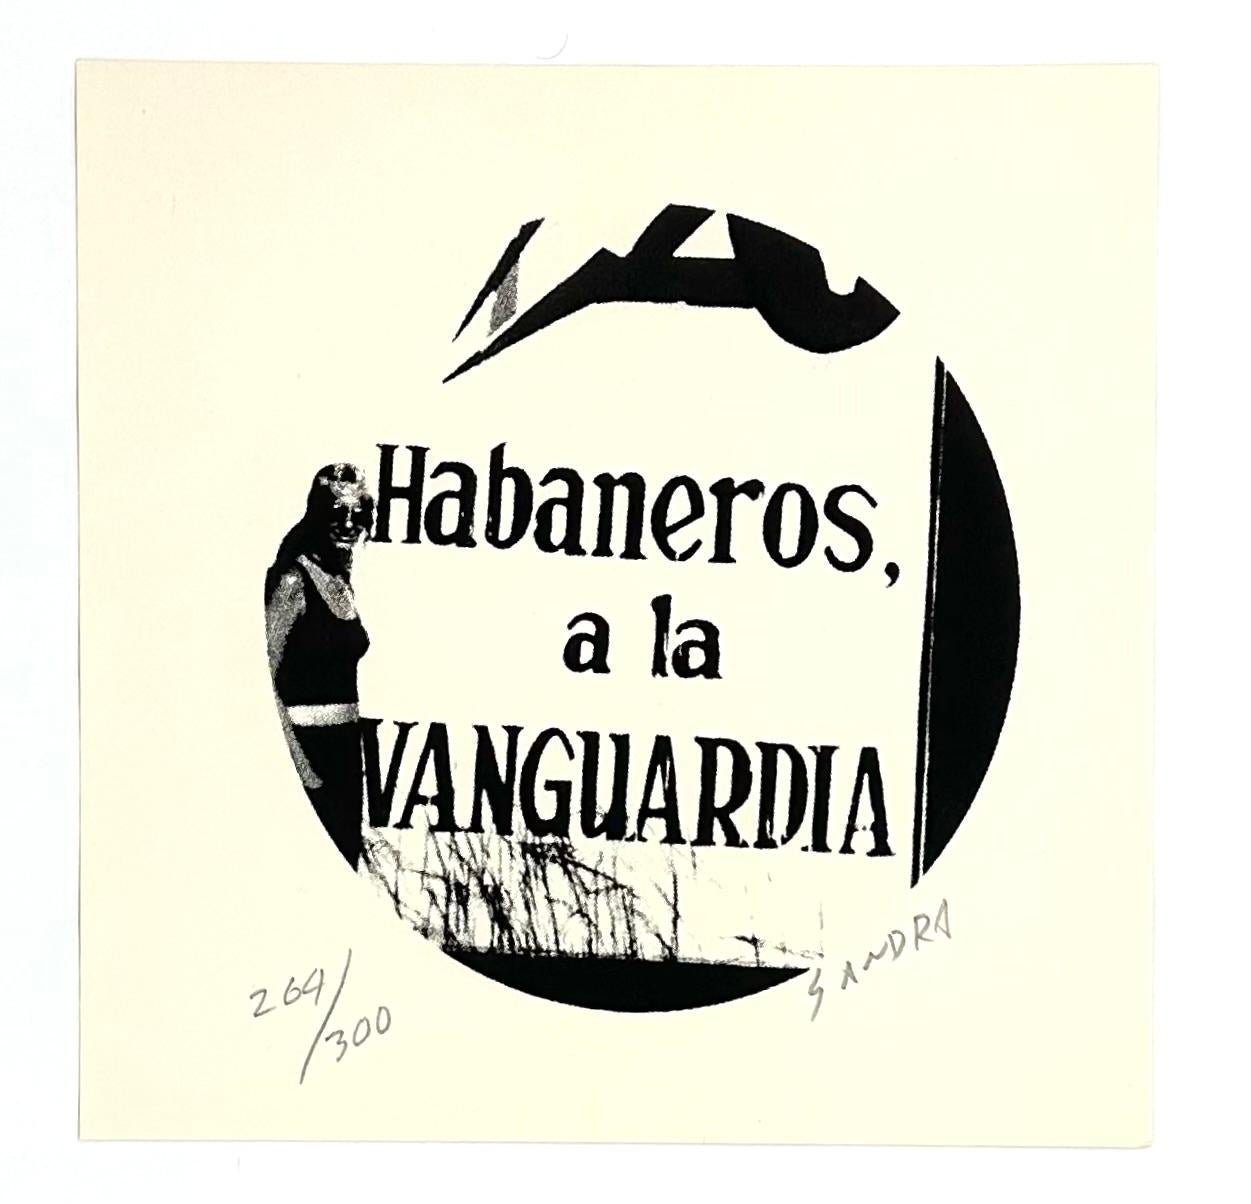 "Sandra Ceballos (Cuba, 1961)
'Habaneros a la Vanguardia  (La Huella Múltiple)', 2002
engraving on paper
8.1 x 8.1 in. (20.5 x 20.5 cm.)
Edition of 300
ID: HUE-214"